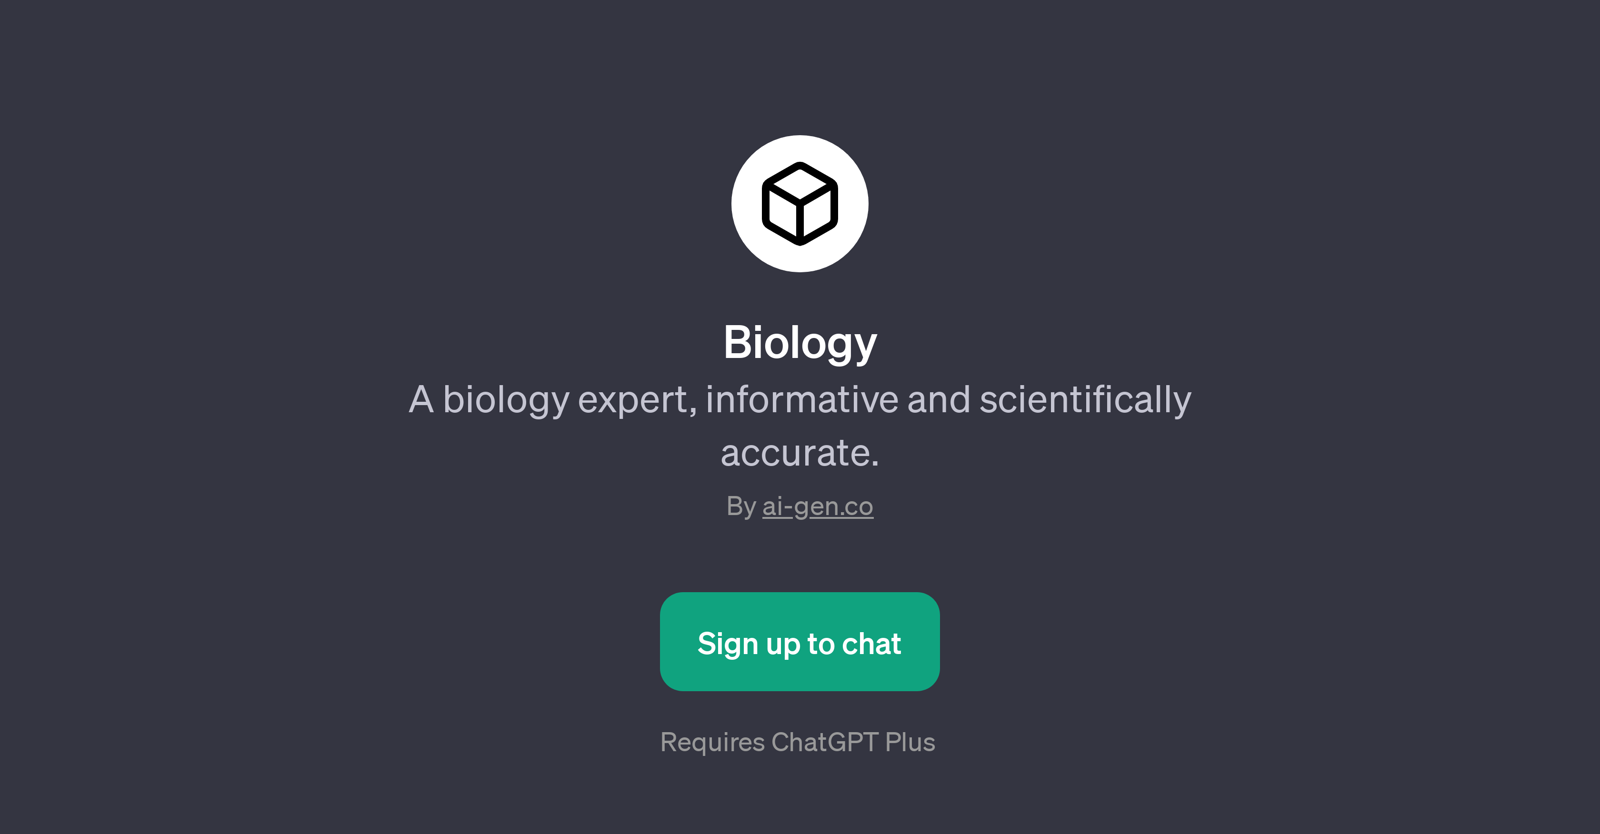 BiologyPage website